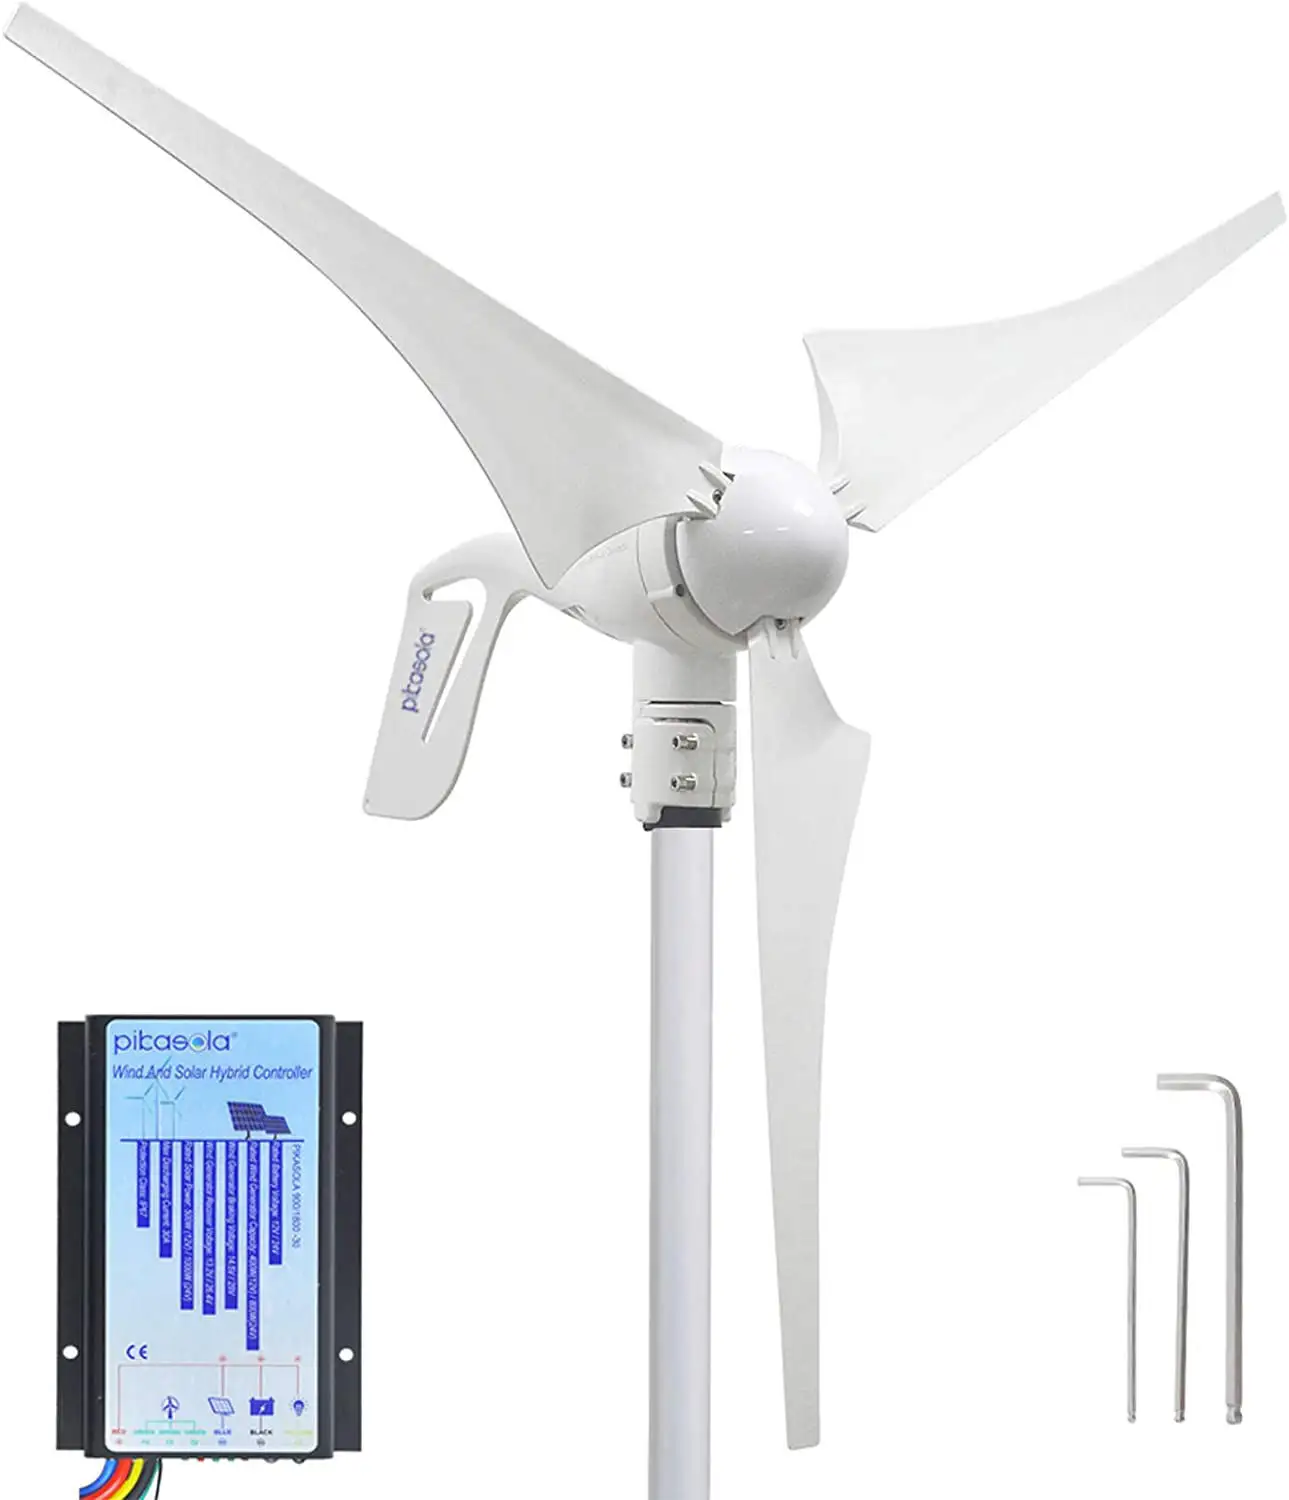 Producto popular precio al por mayor 5kw turbina eólica 10kw turbina eólica doméstica 500W 800W generador de viento 1kw 2kw 3kw